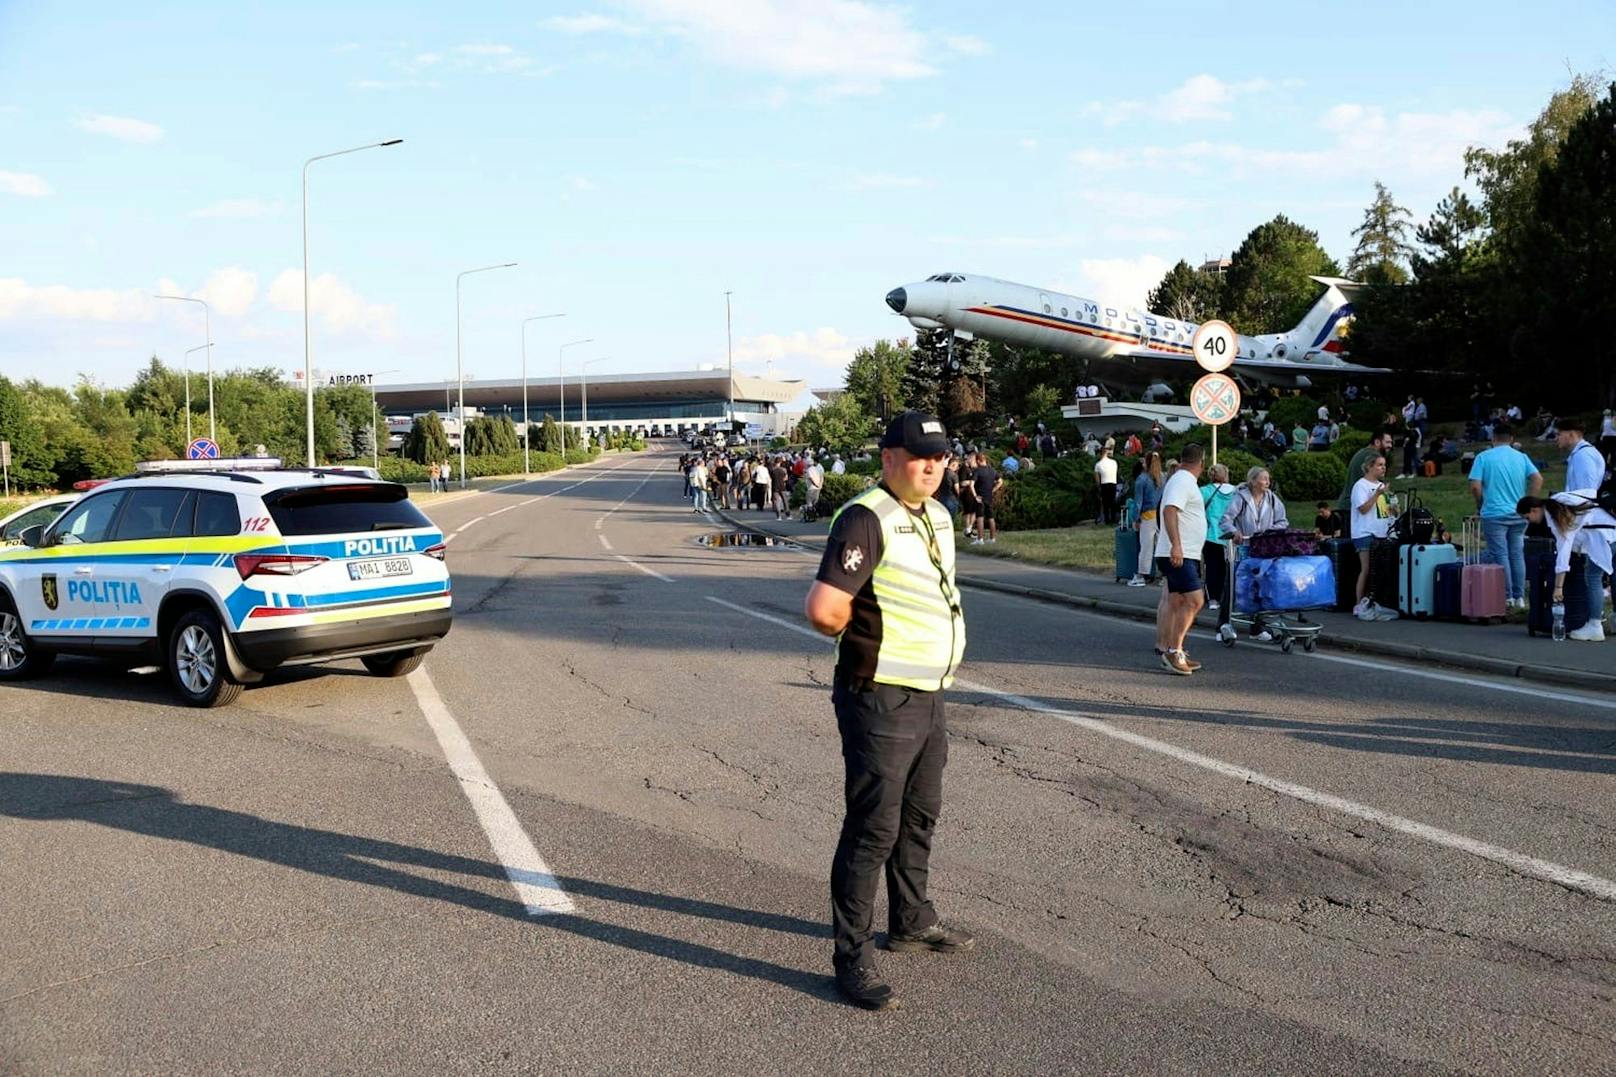 Passagiere wurden von Sicherheitskräften und Polizisten vom Flughafen evakuiert.